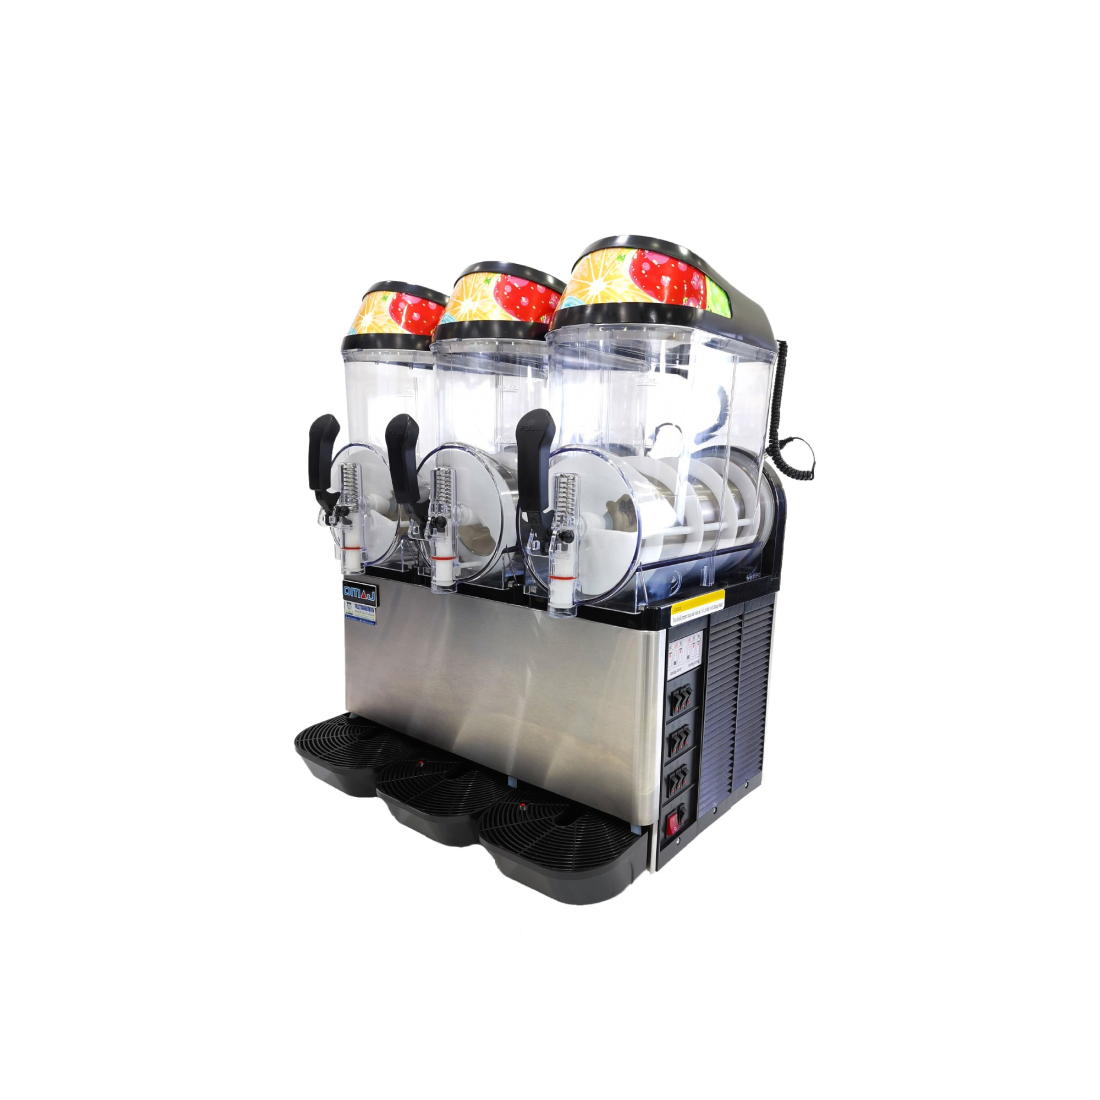 آلة صنع المشروبات المثلجة سلاش 3 حوض (Chill 3) من أوماج|mkayn|مكاين